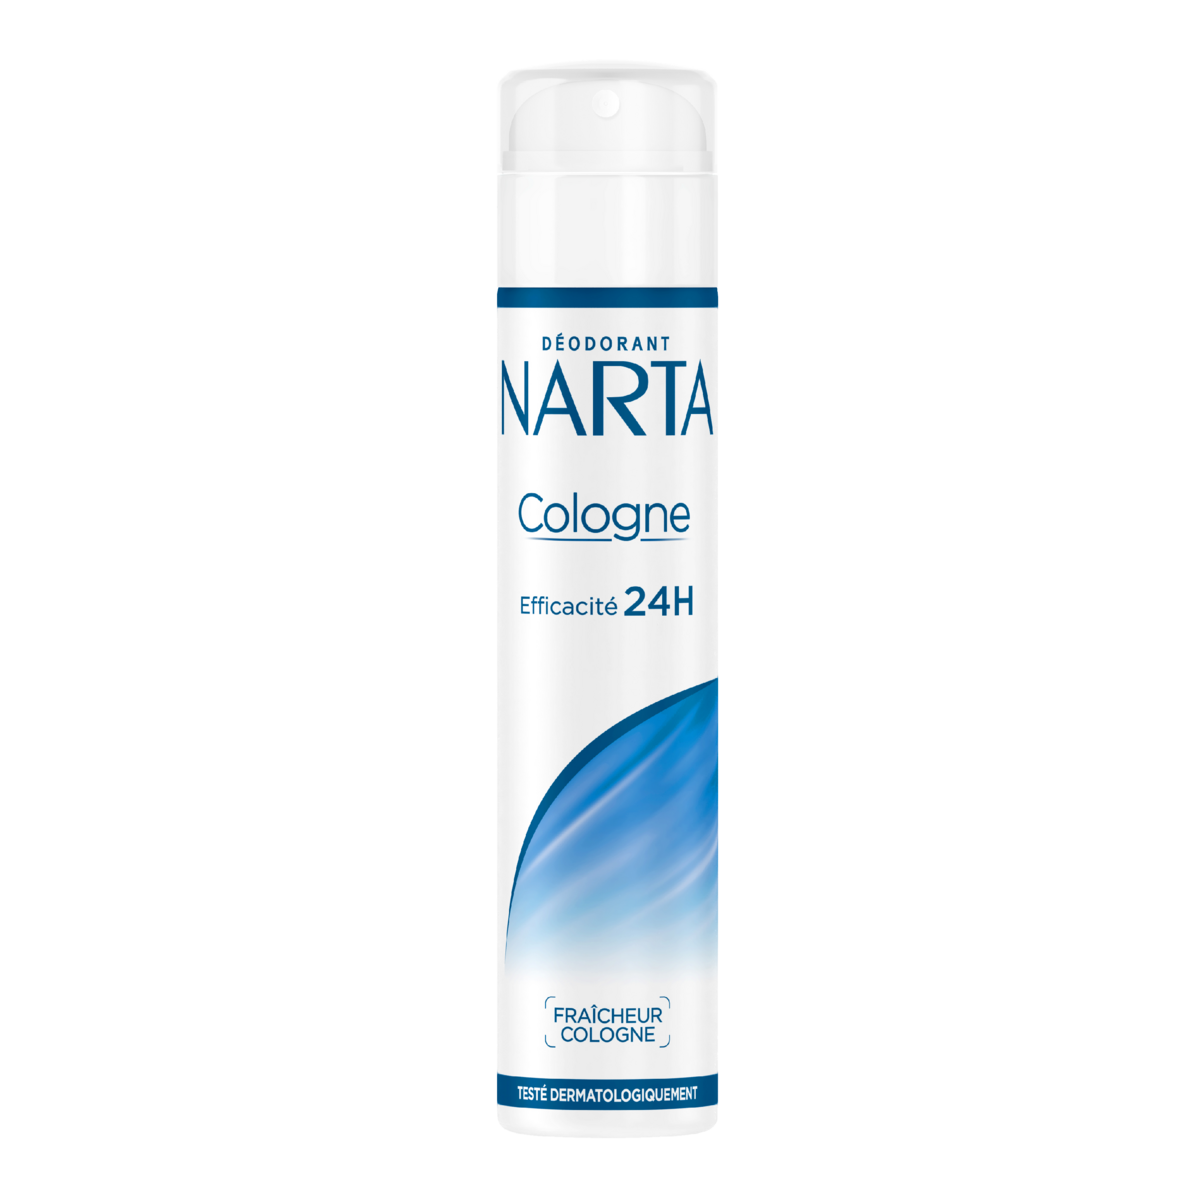 NARTA Déodorant spray fraîcheur cologne 200ml -J50